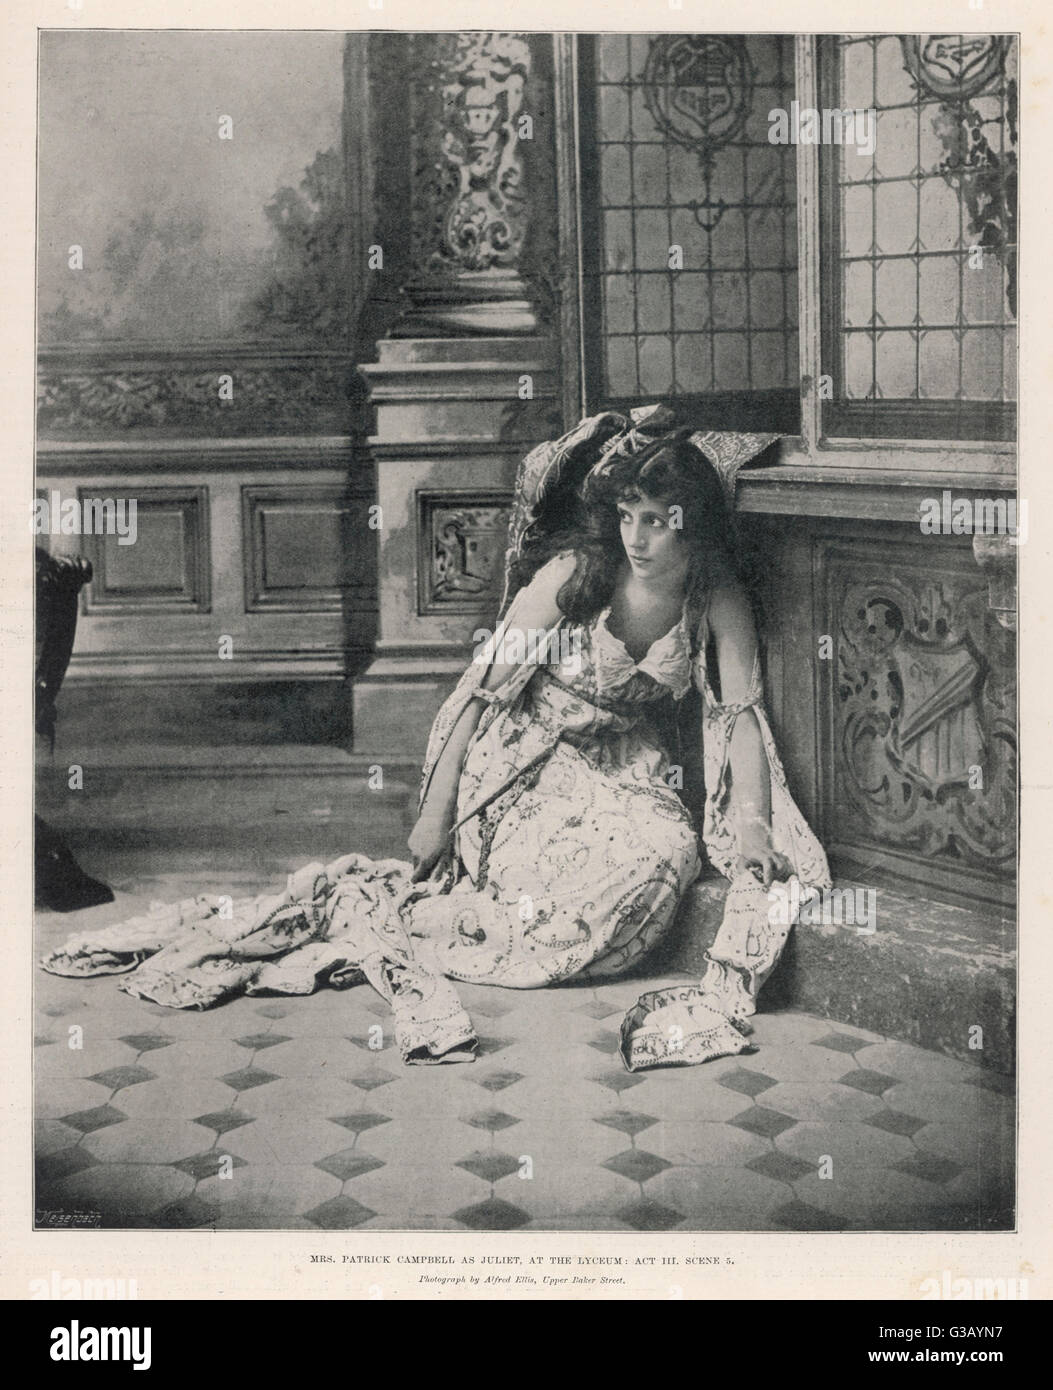 Mme Patrick Campbell actrice anglaise comme Juliet au Lyceum Theatre, Londres (Acte 3, scène 5) Date : 1895 Banque D'Images